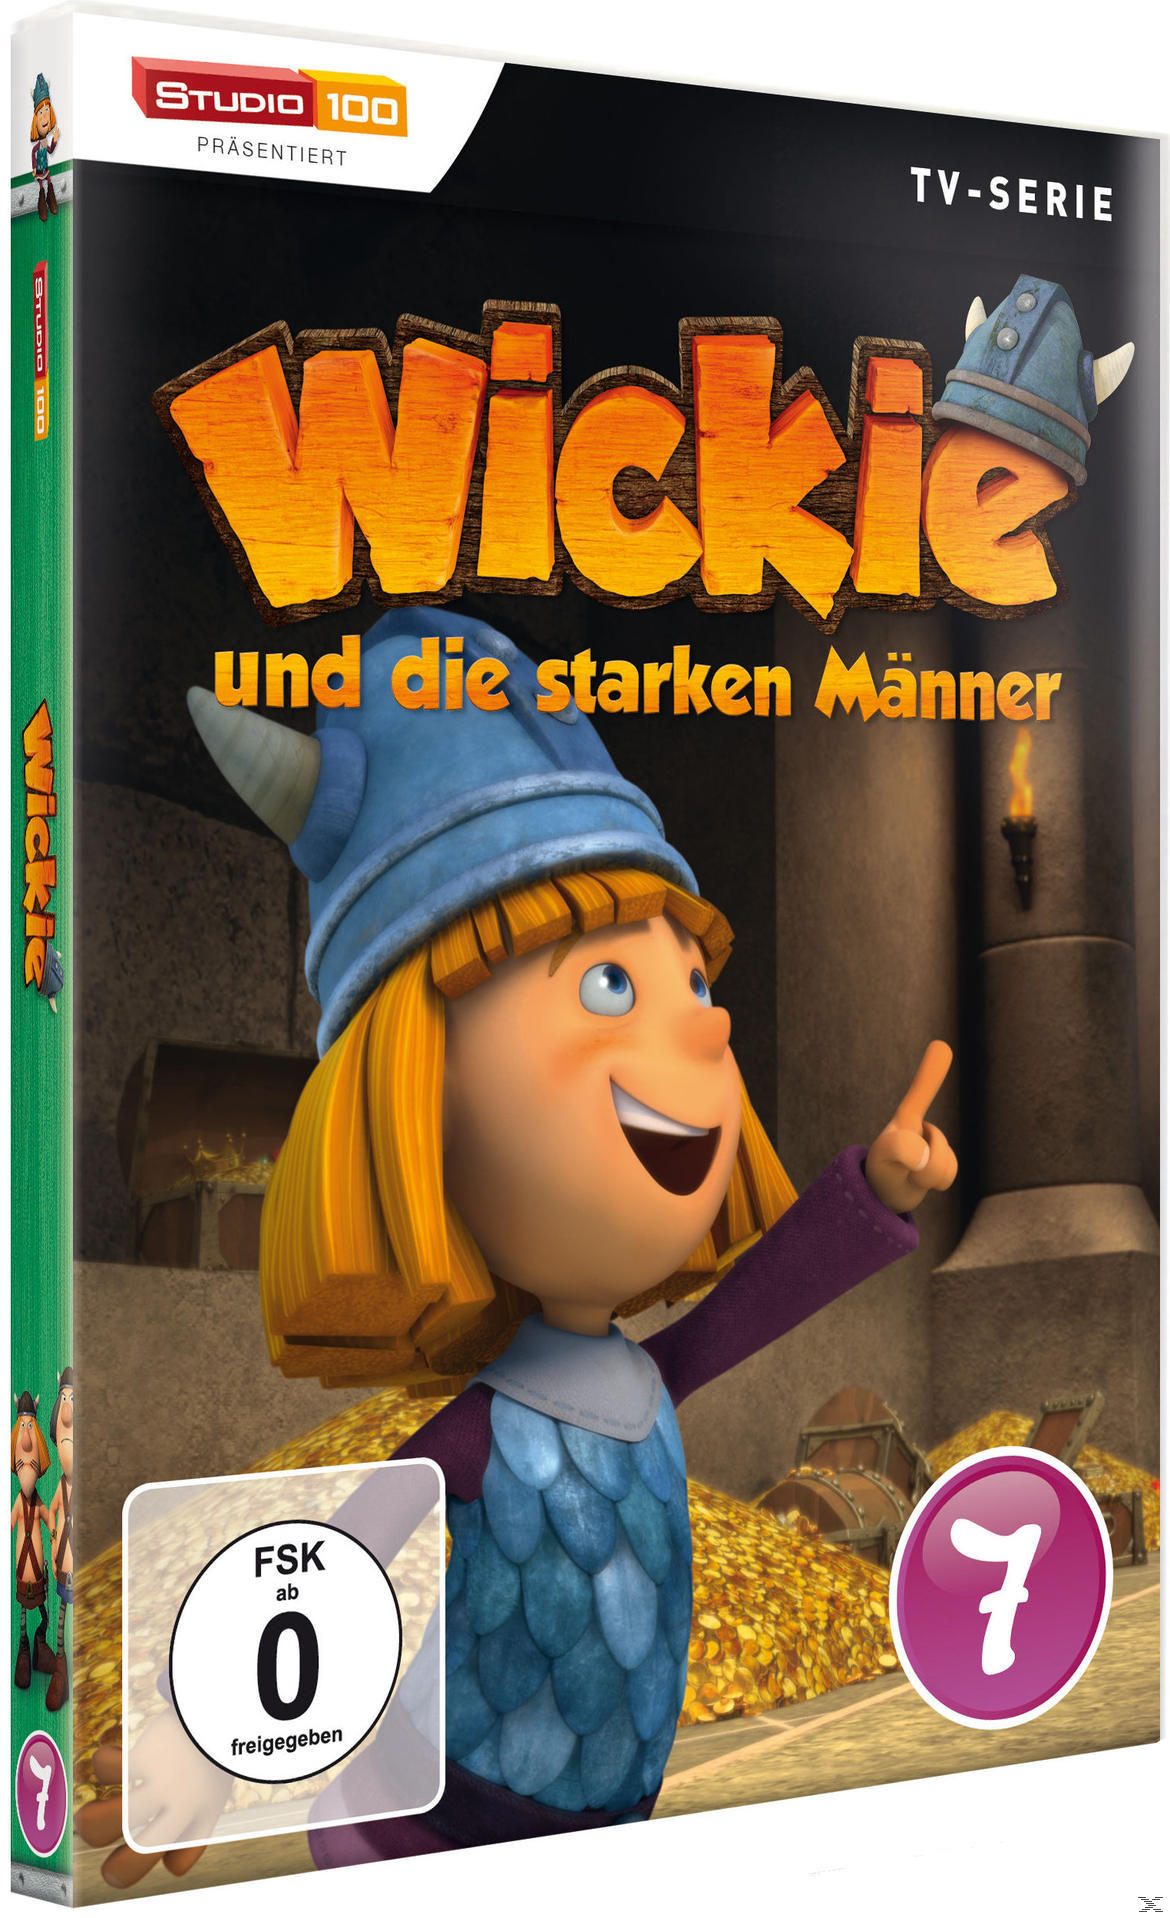 DVD die starken - 7 Wickie DVD und Männer